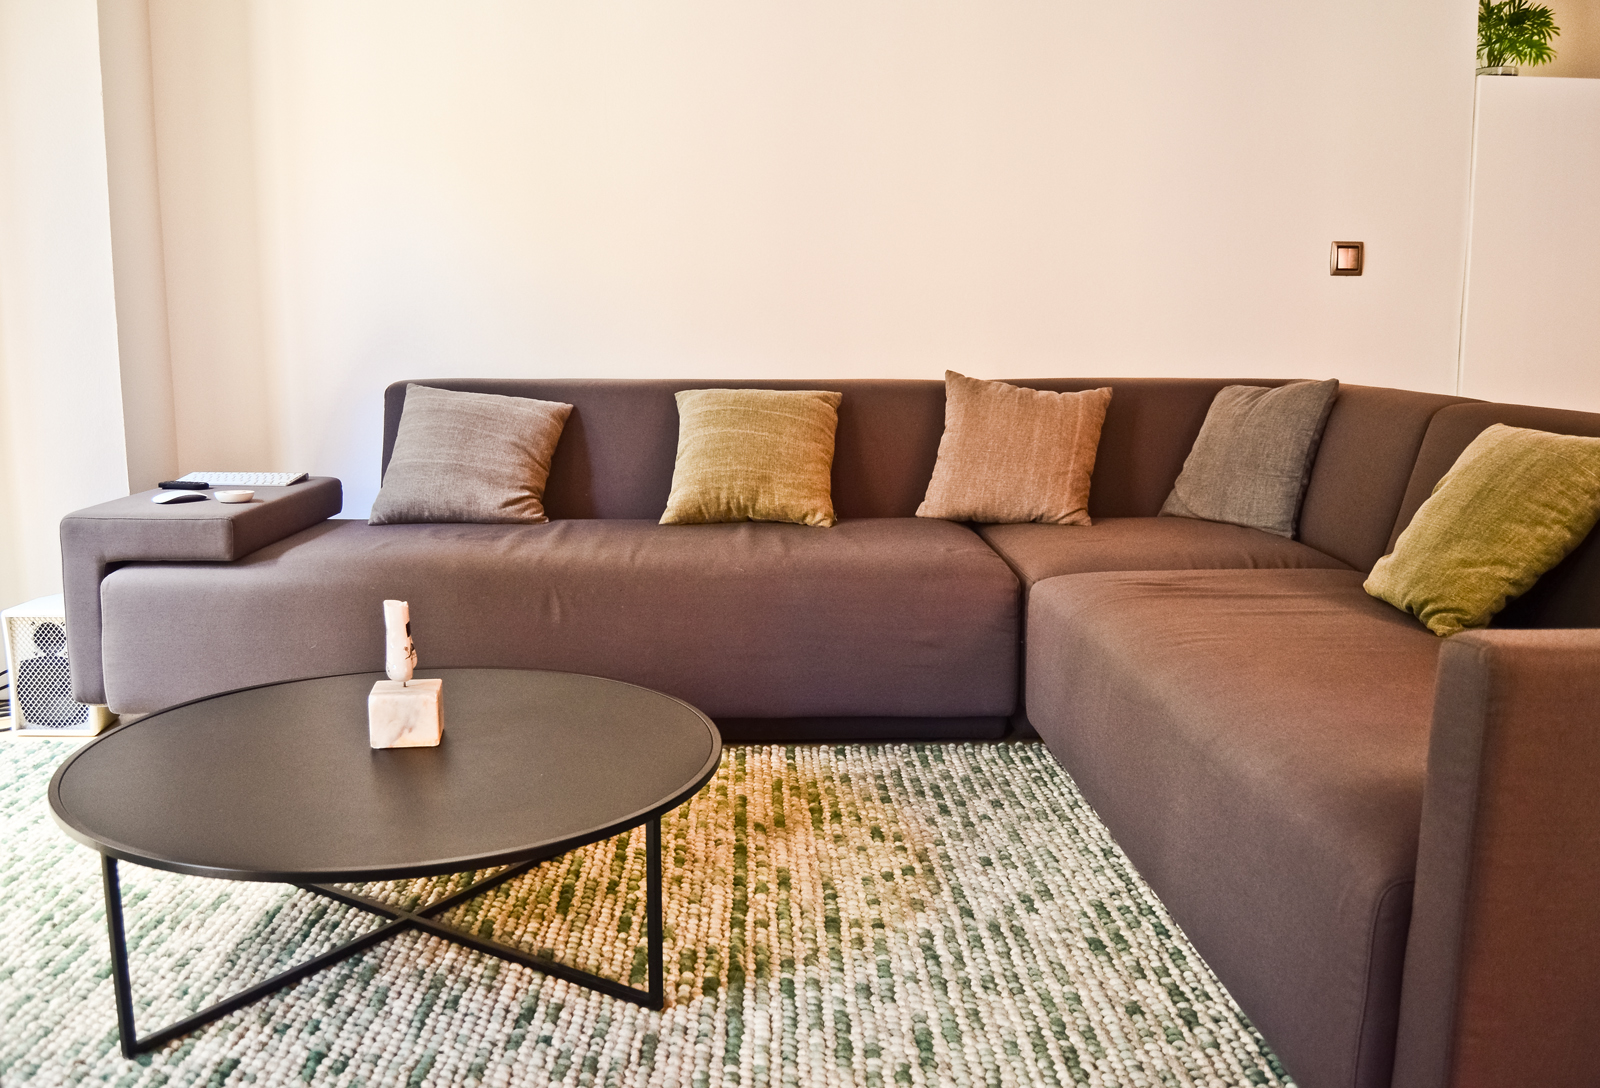 Para el mobiliario de este espacio, se eligió un sofá mass, de Francesc Rifé por líneas depuradas y su bajo perfil y versatilidad, en forma de L girada según la dirección de los sesgos medianeros, indica el inicio de la zona de relax